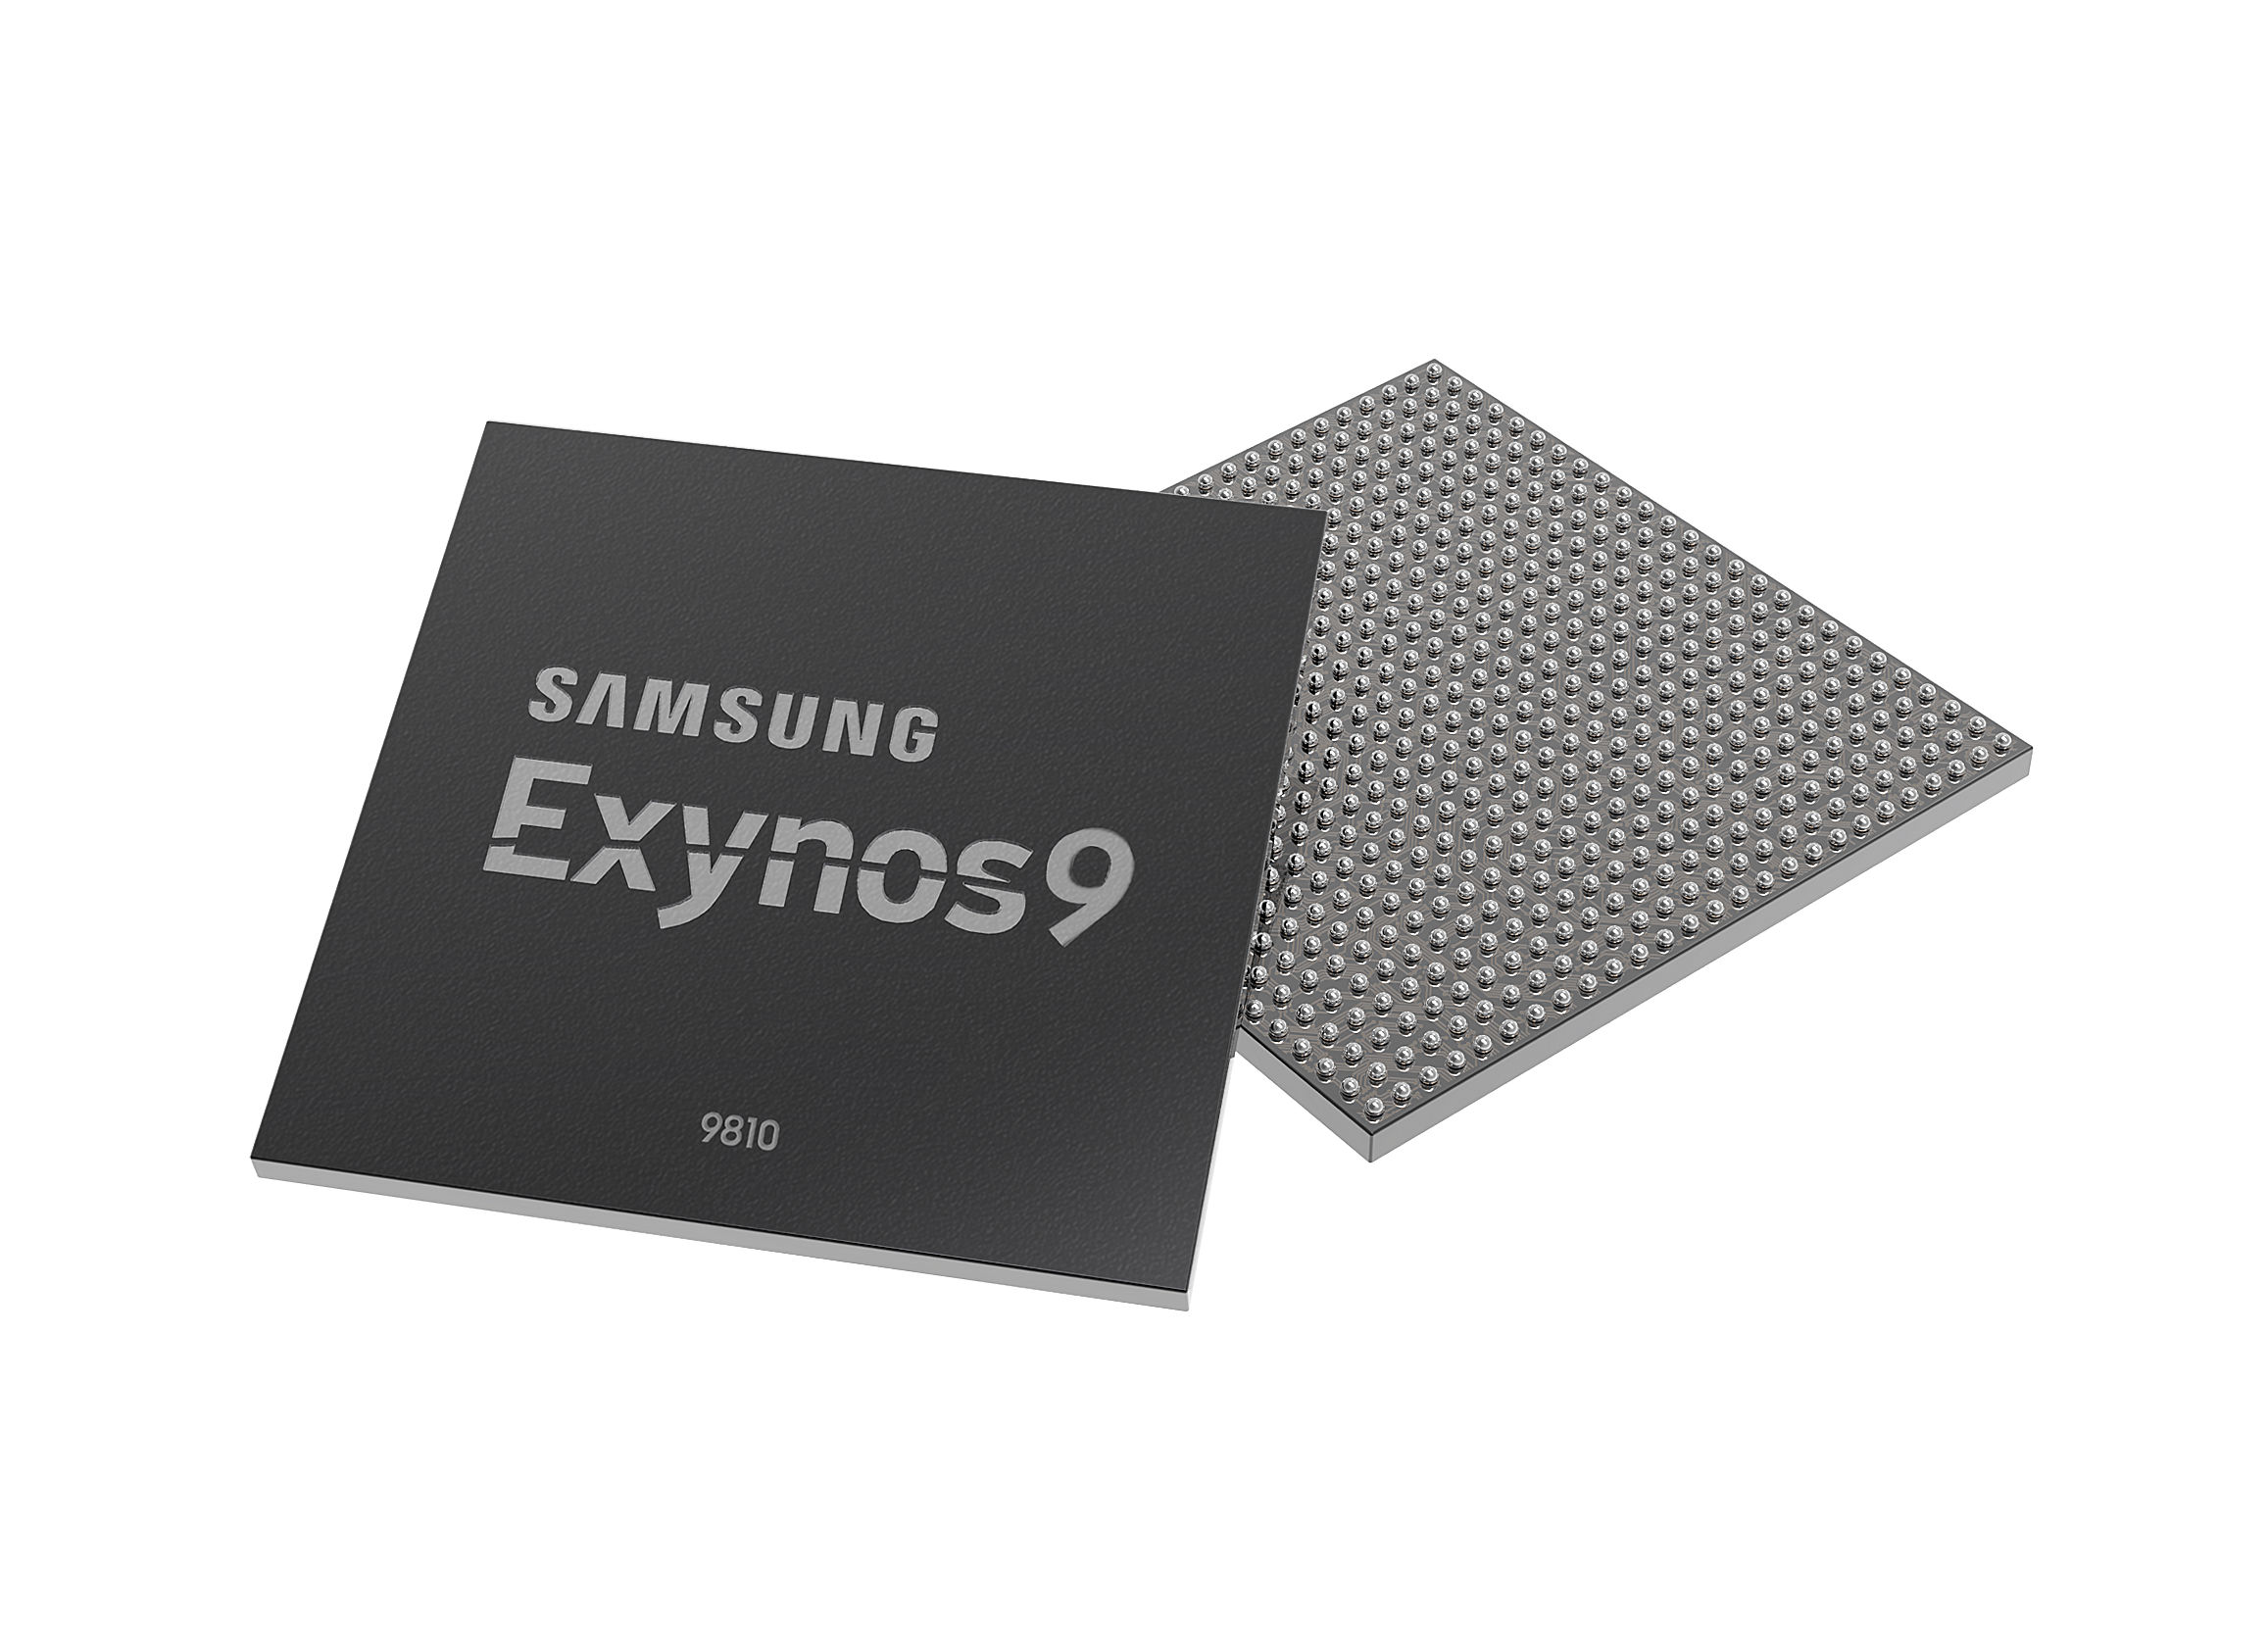 Samsung Exynos 9810 Processor